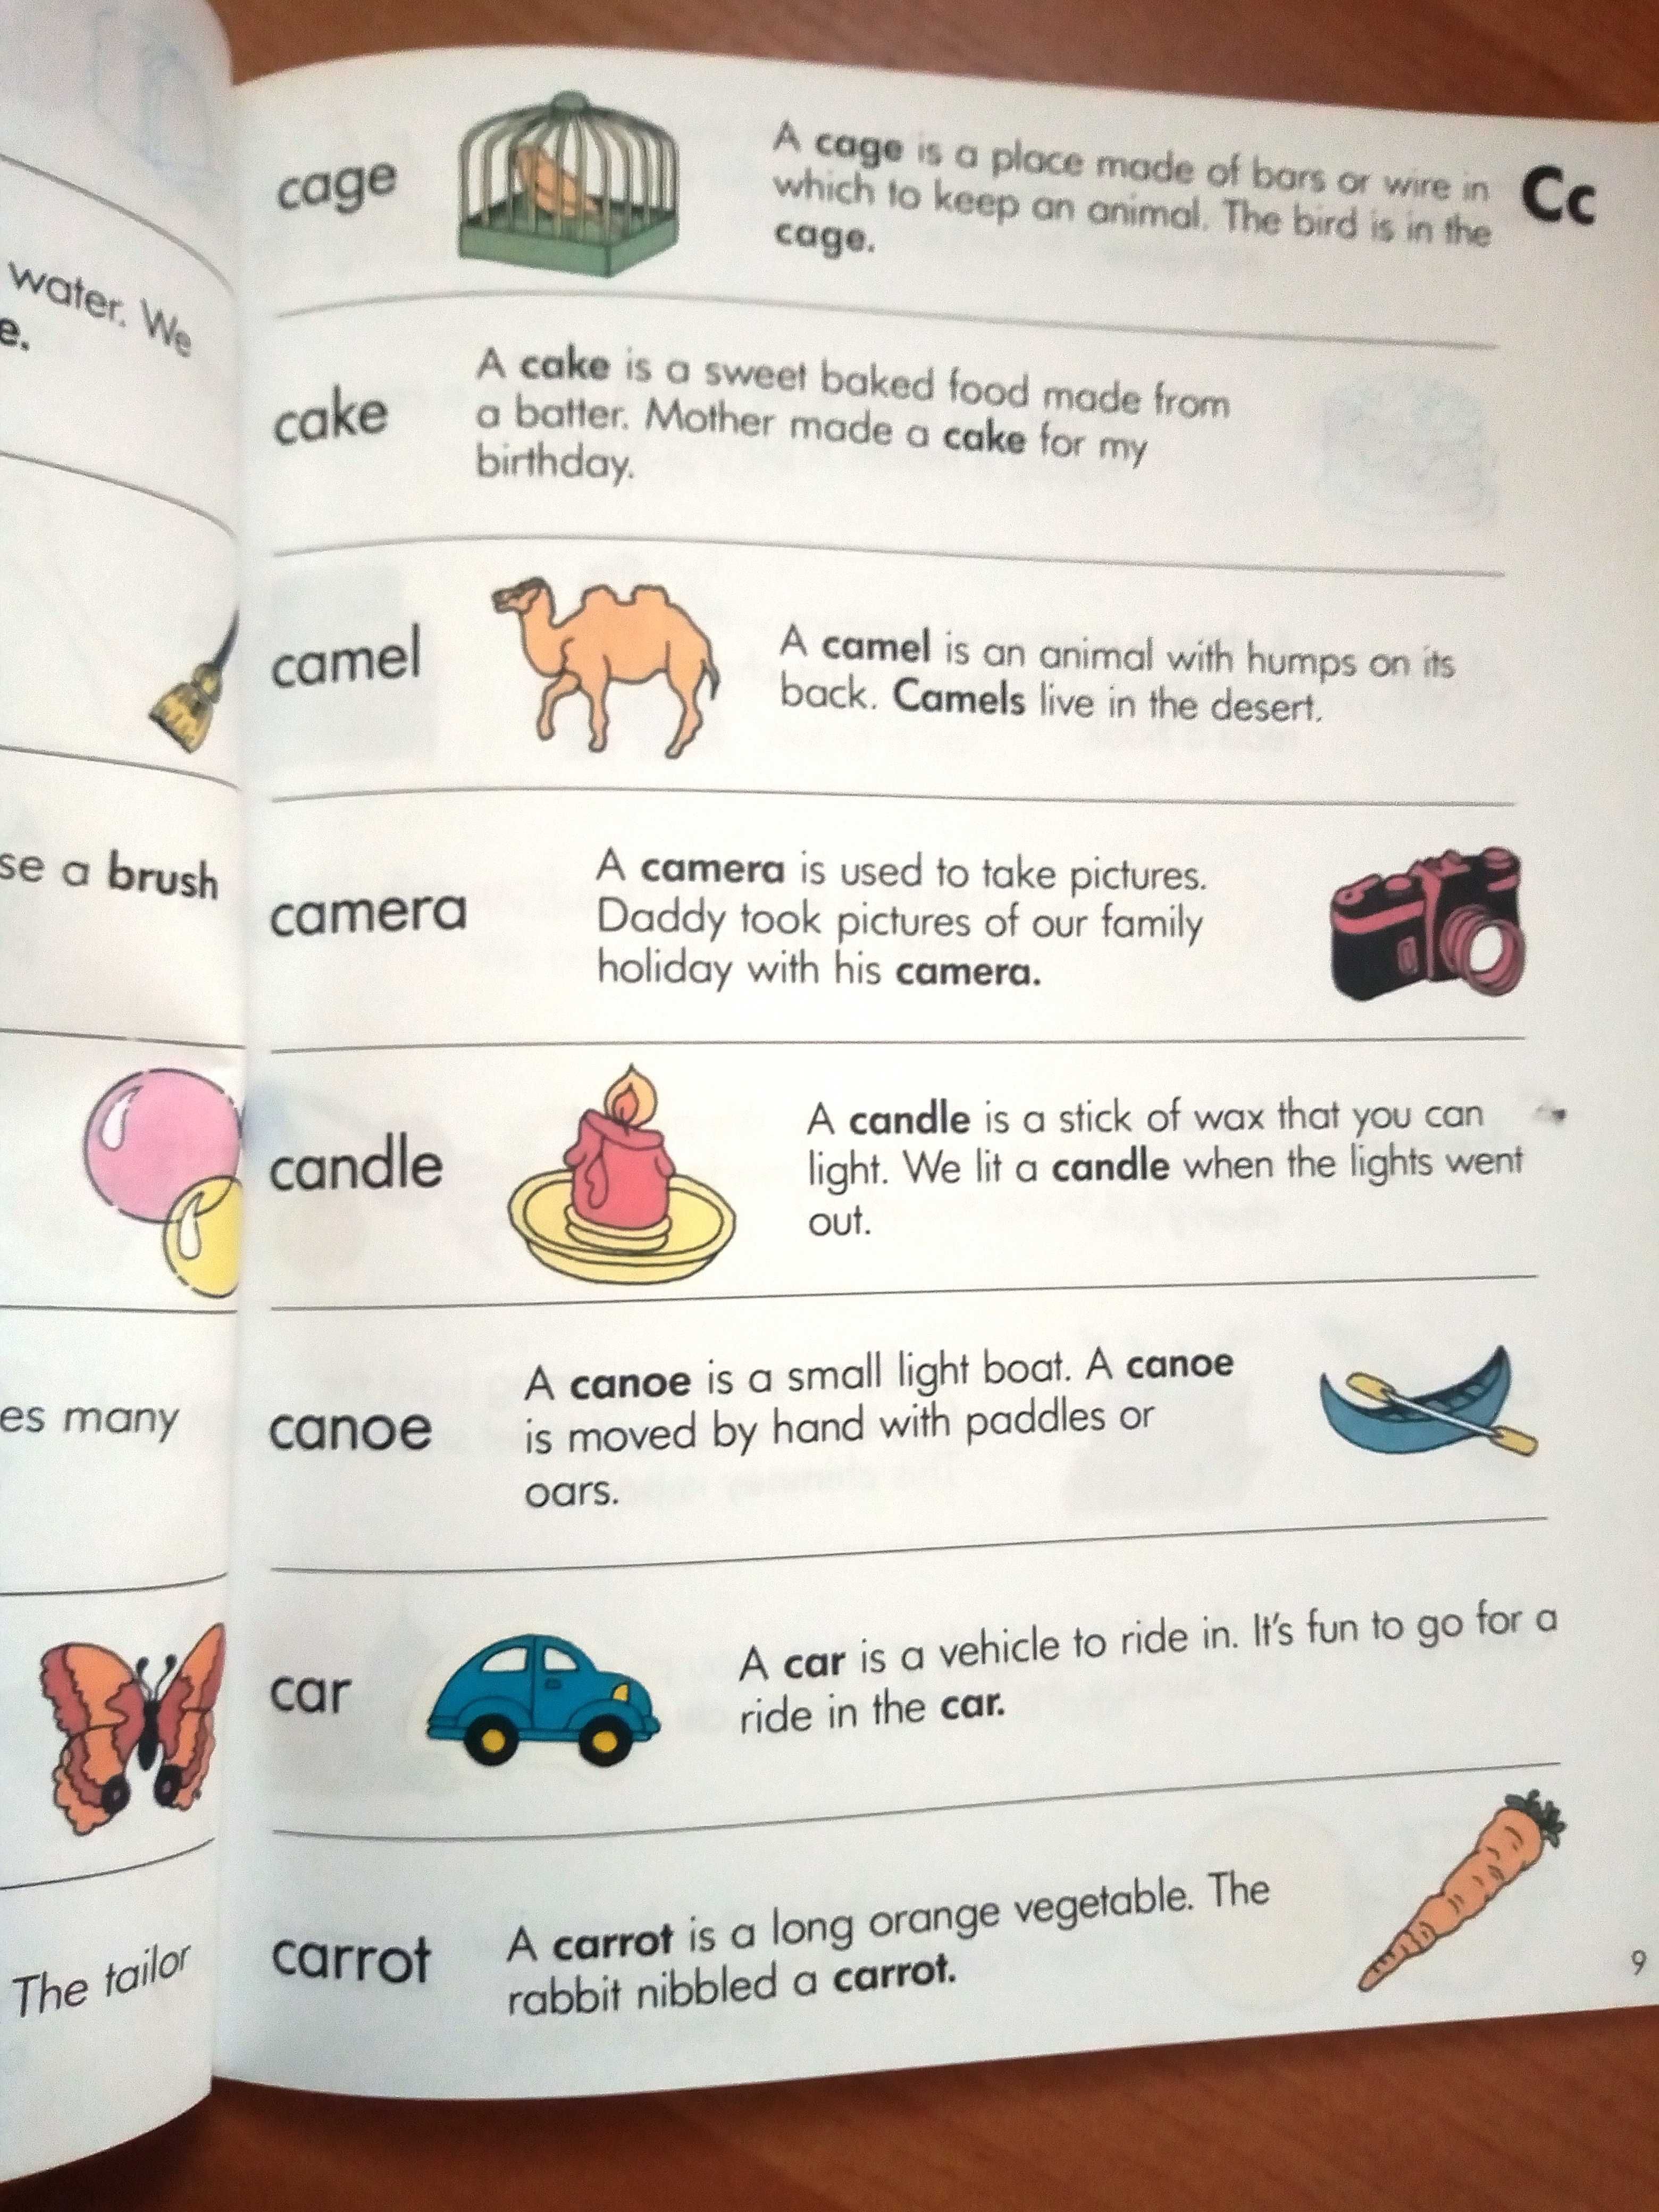 słownik dla dzieci obrazkowy angielski używany